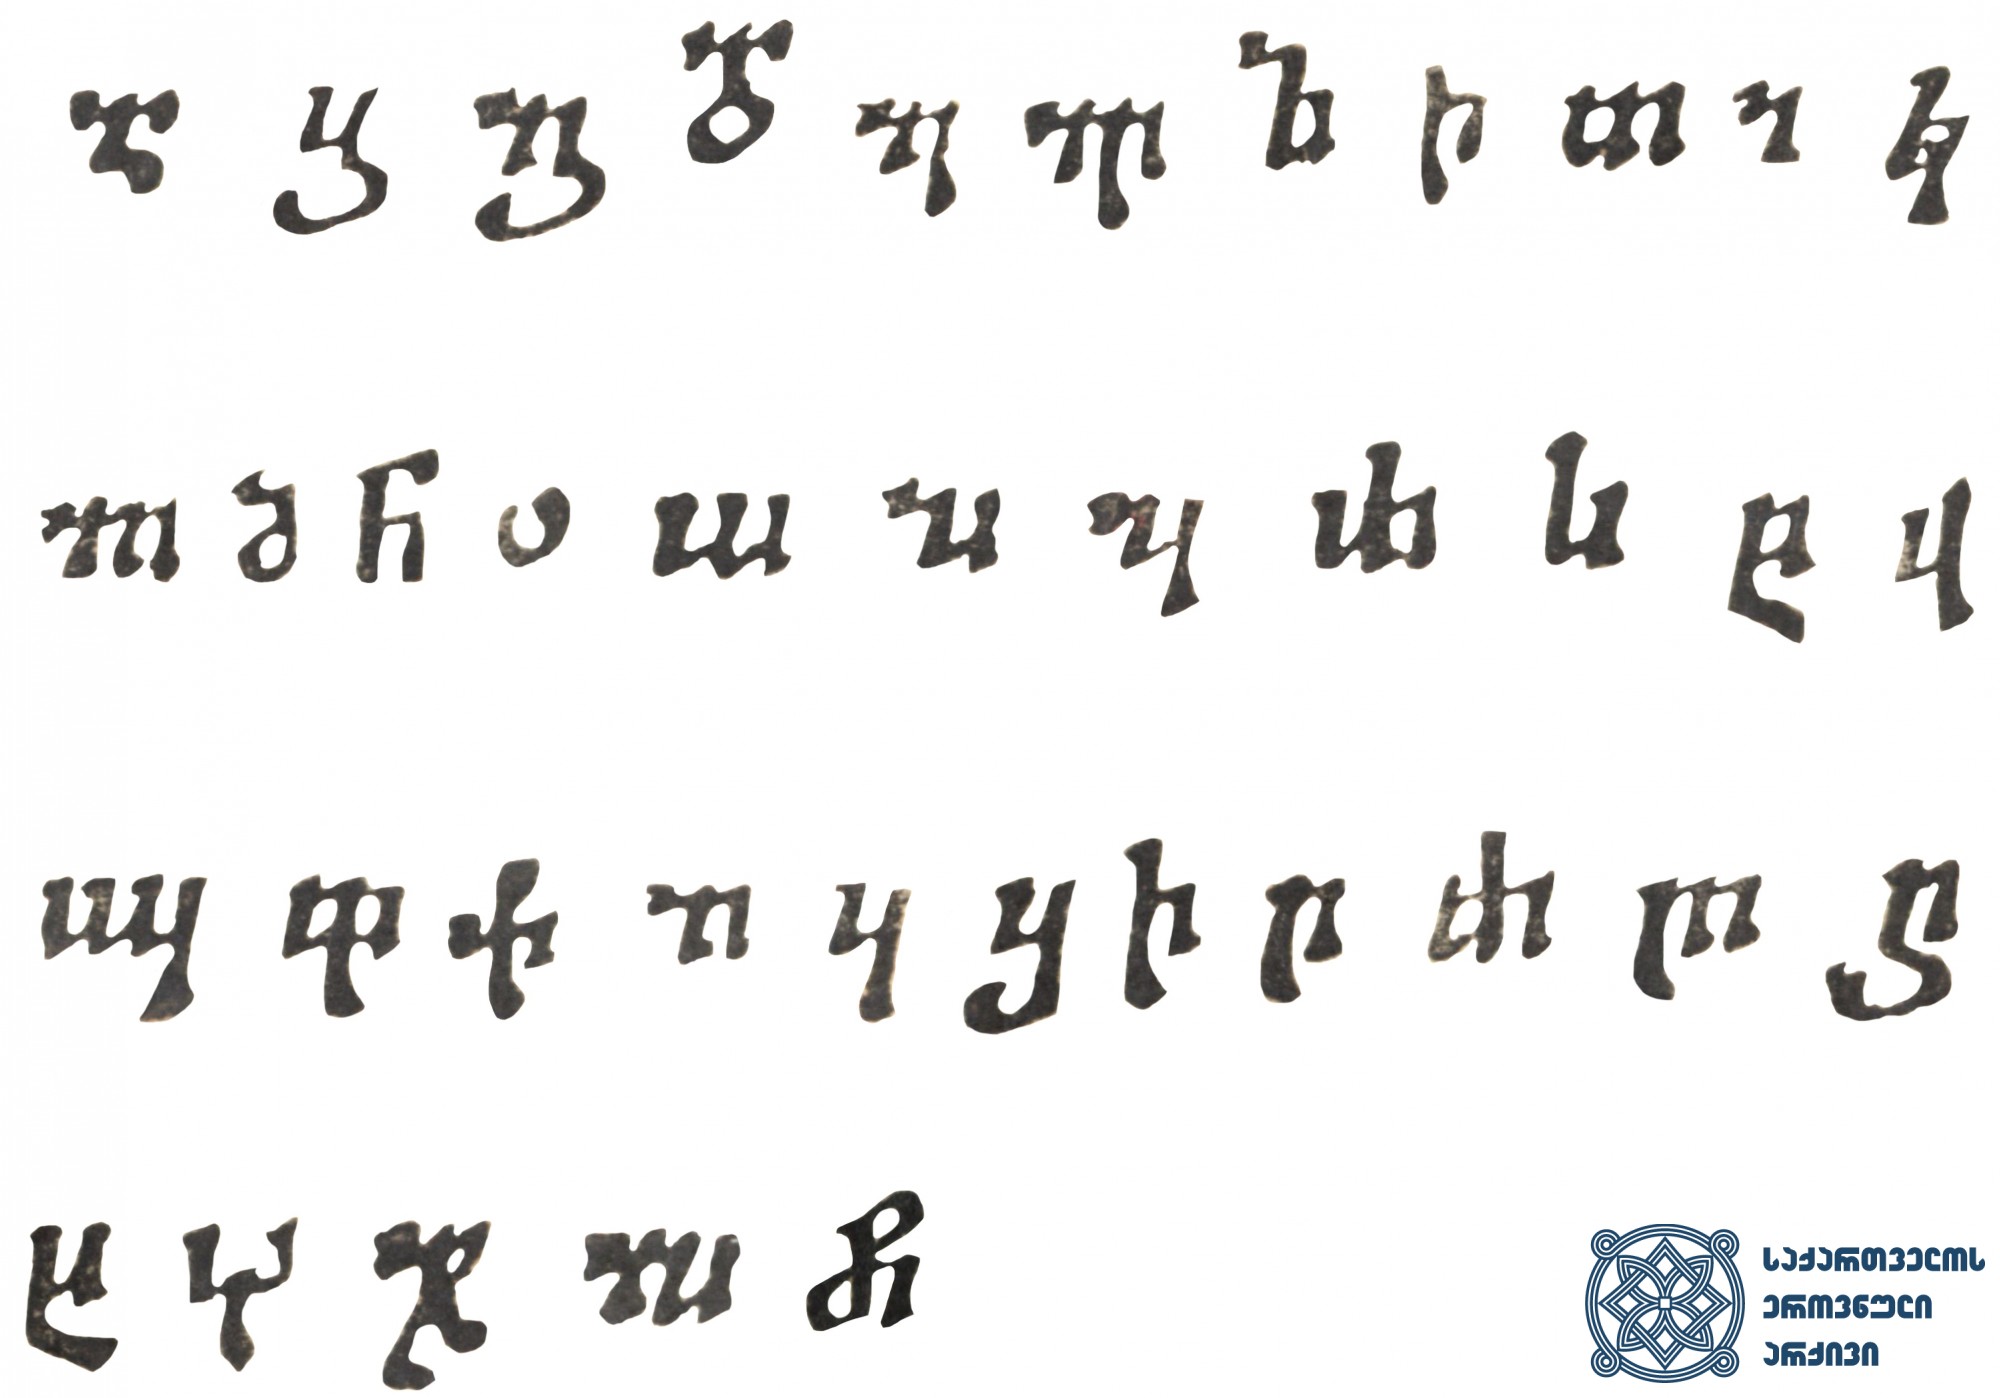 ვახტანგ VI-ის სტამბაში გამოცემულ წიგნებში გამოყენებული ნუსხური შრიფტი <br>
ტფილისი, 1709-1717 <br>
Nuskhhuri Type used in the Books printed in the Printing House of Vakhtang VI <br>
Tfilisi, 1709-1717